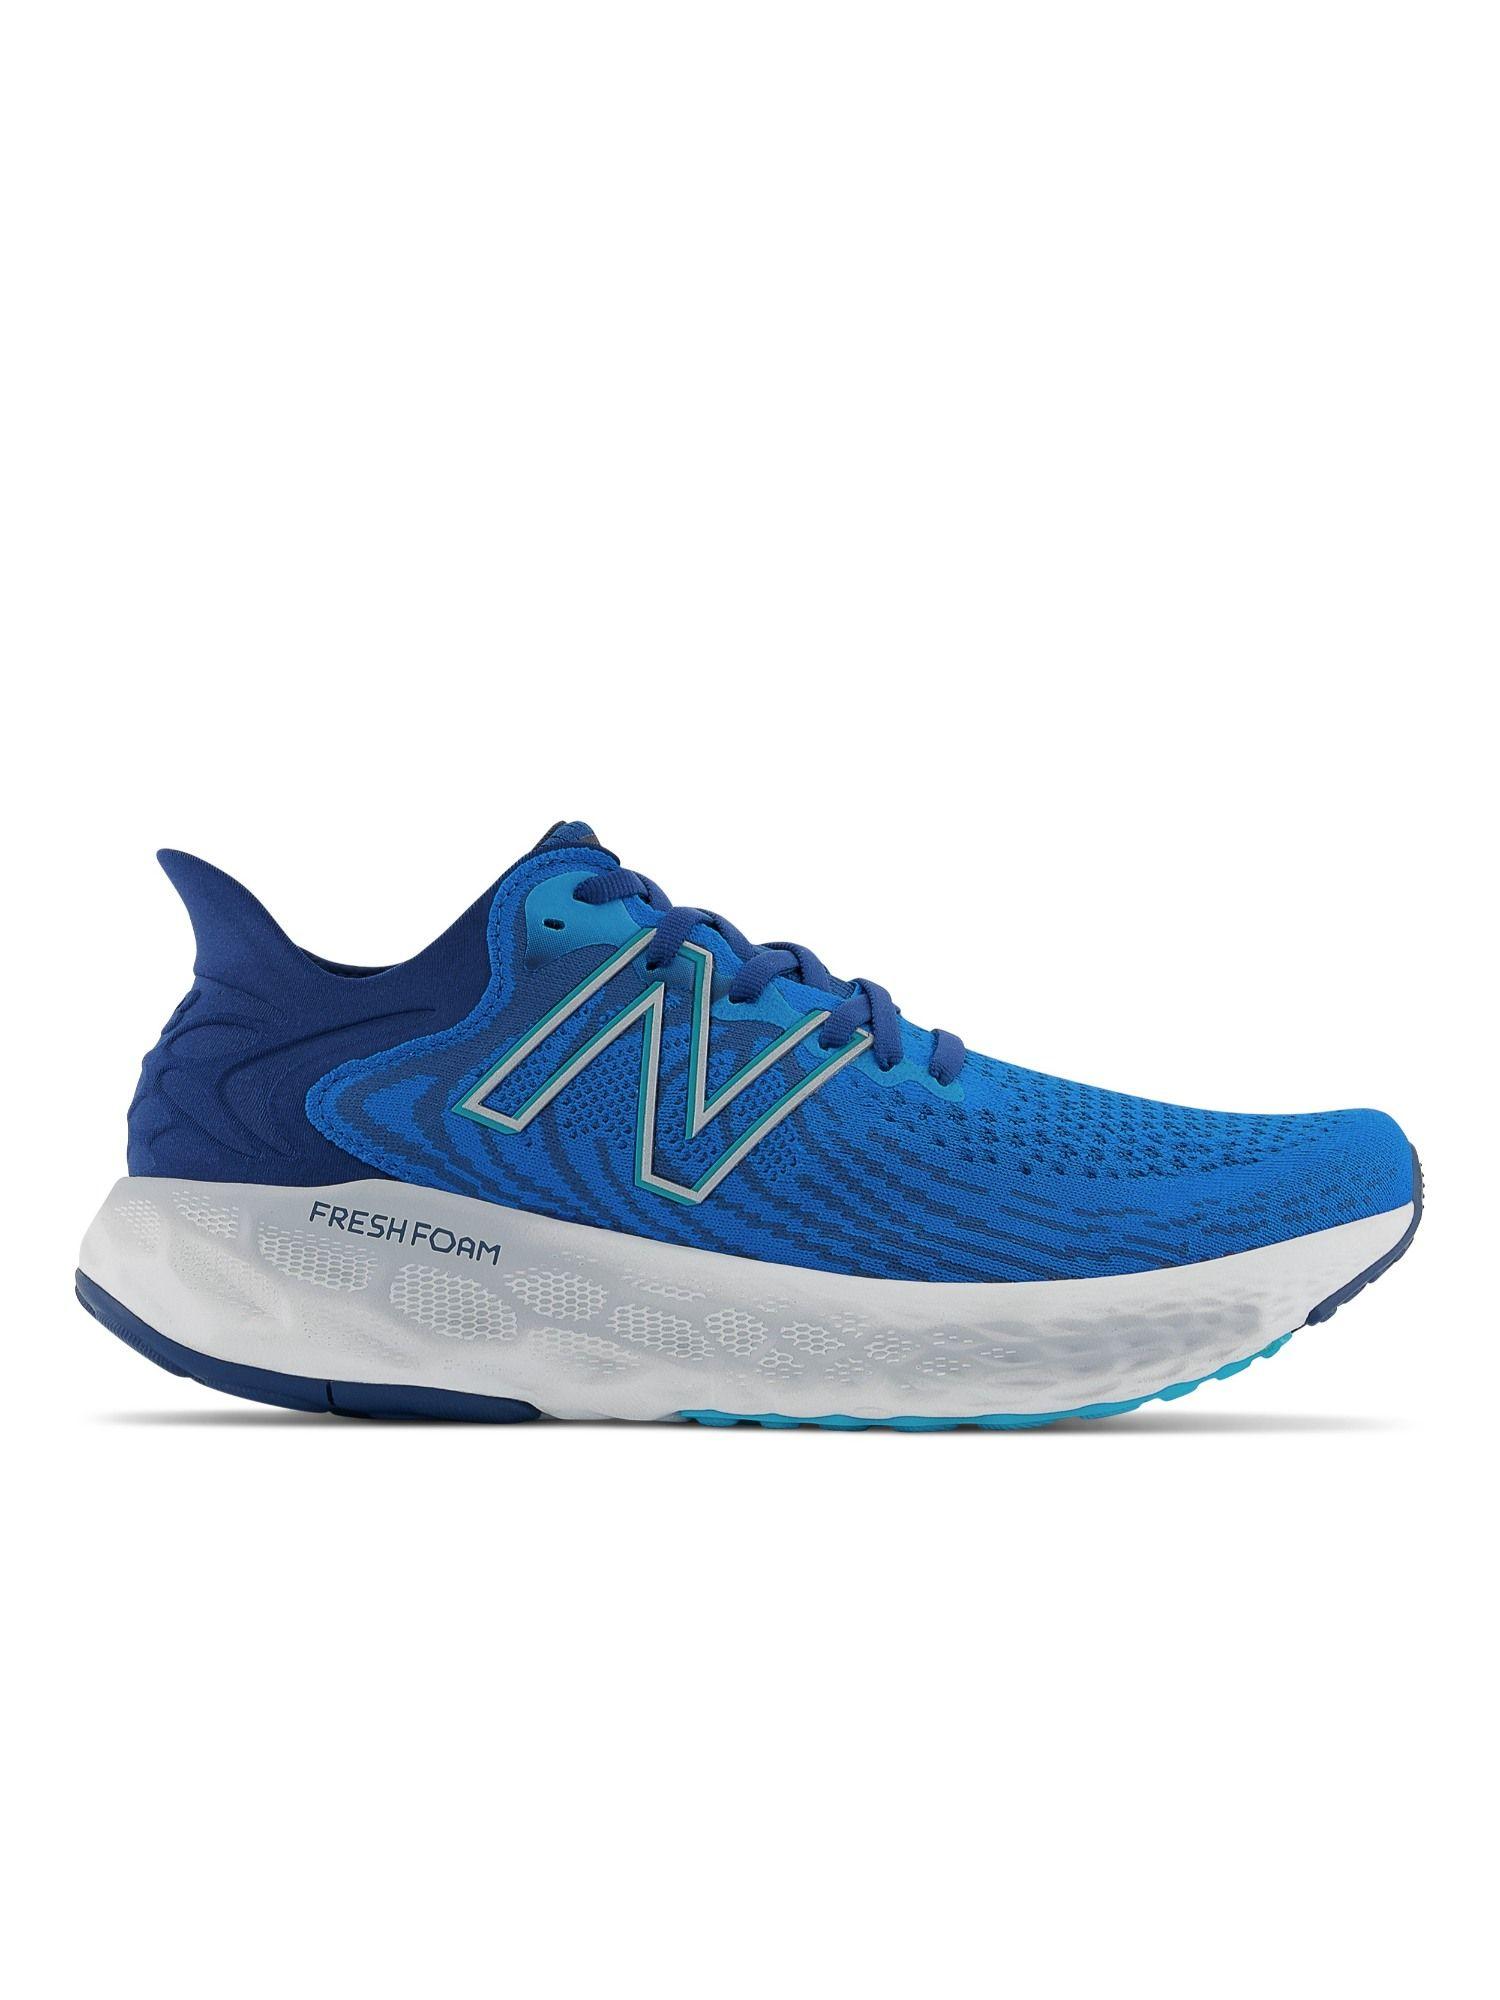 men 1080 blue running shoes